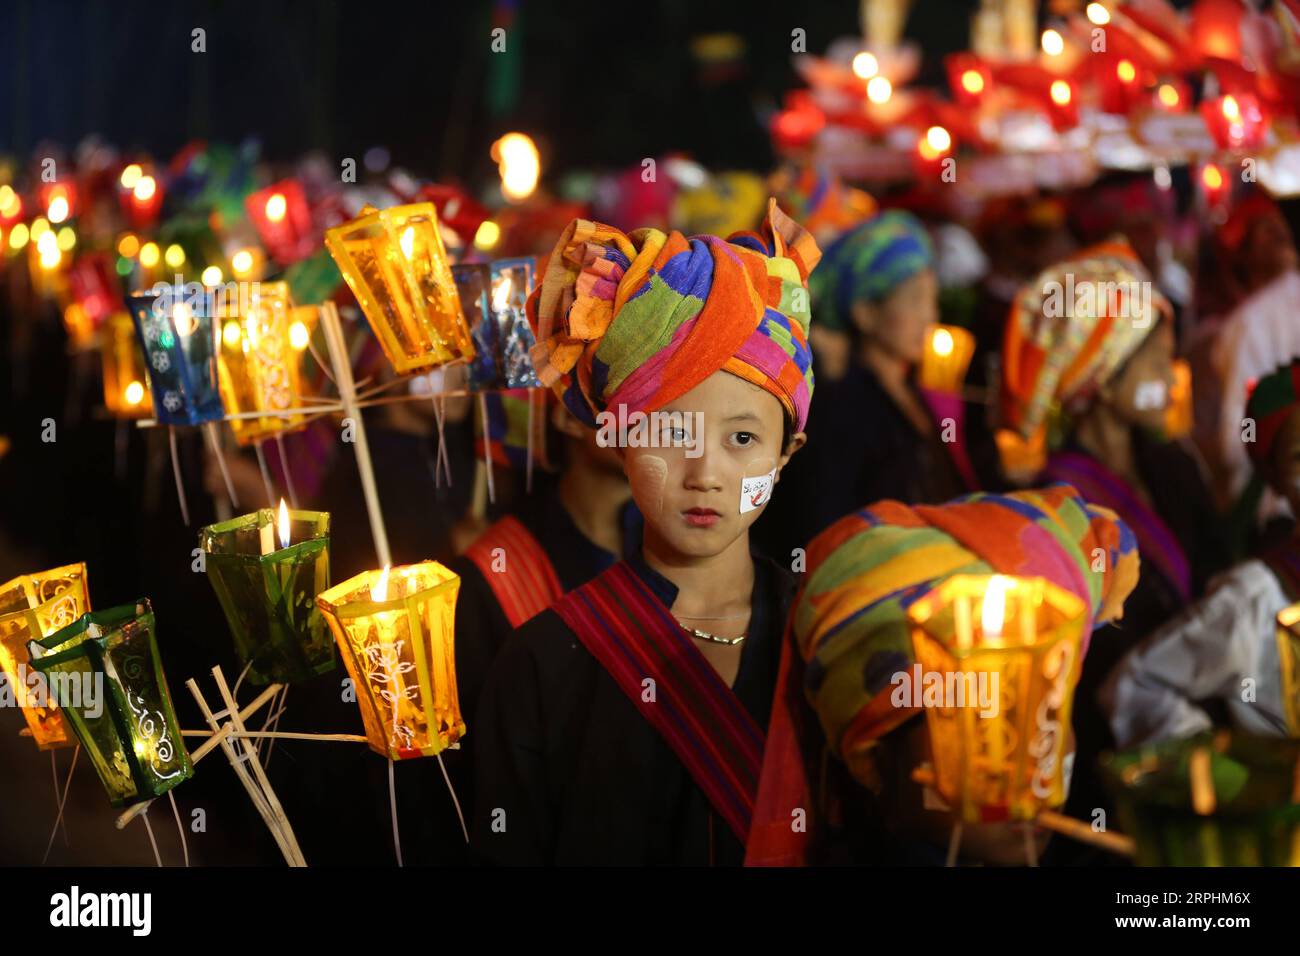 191113 -- KALAW MYANMAR, 13. November 2019 -- Menschen nehmen an der Feier des Tazaungdaing Festivals in der Kalaw Township, Shan State of Myanmar, 12. November 2019 Teil. Myanmar feierte sein traditionelles Tazaungdaing-Festival am Vollmondtag von Tazaungmone, dem achten Monat des Myanmar-Kalenders am Montag. Im Rahmen des Tazaungdaing Festivals veranstaltete Kalaw im Shan-Staat Myanmars das traditionelle Mee-Shaw-Dine Fire-Pole Festival. Foto von /Xinhua MYANMAR-KALAW-TAZAUNGDAING FESTIVAL UxAung PUBLICATIONxNOTxINxCHN Stockfoto